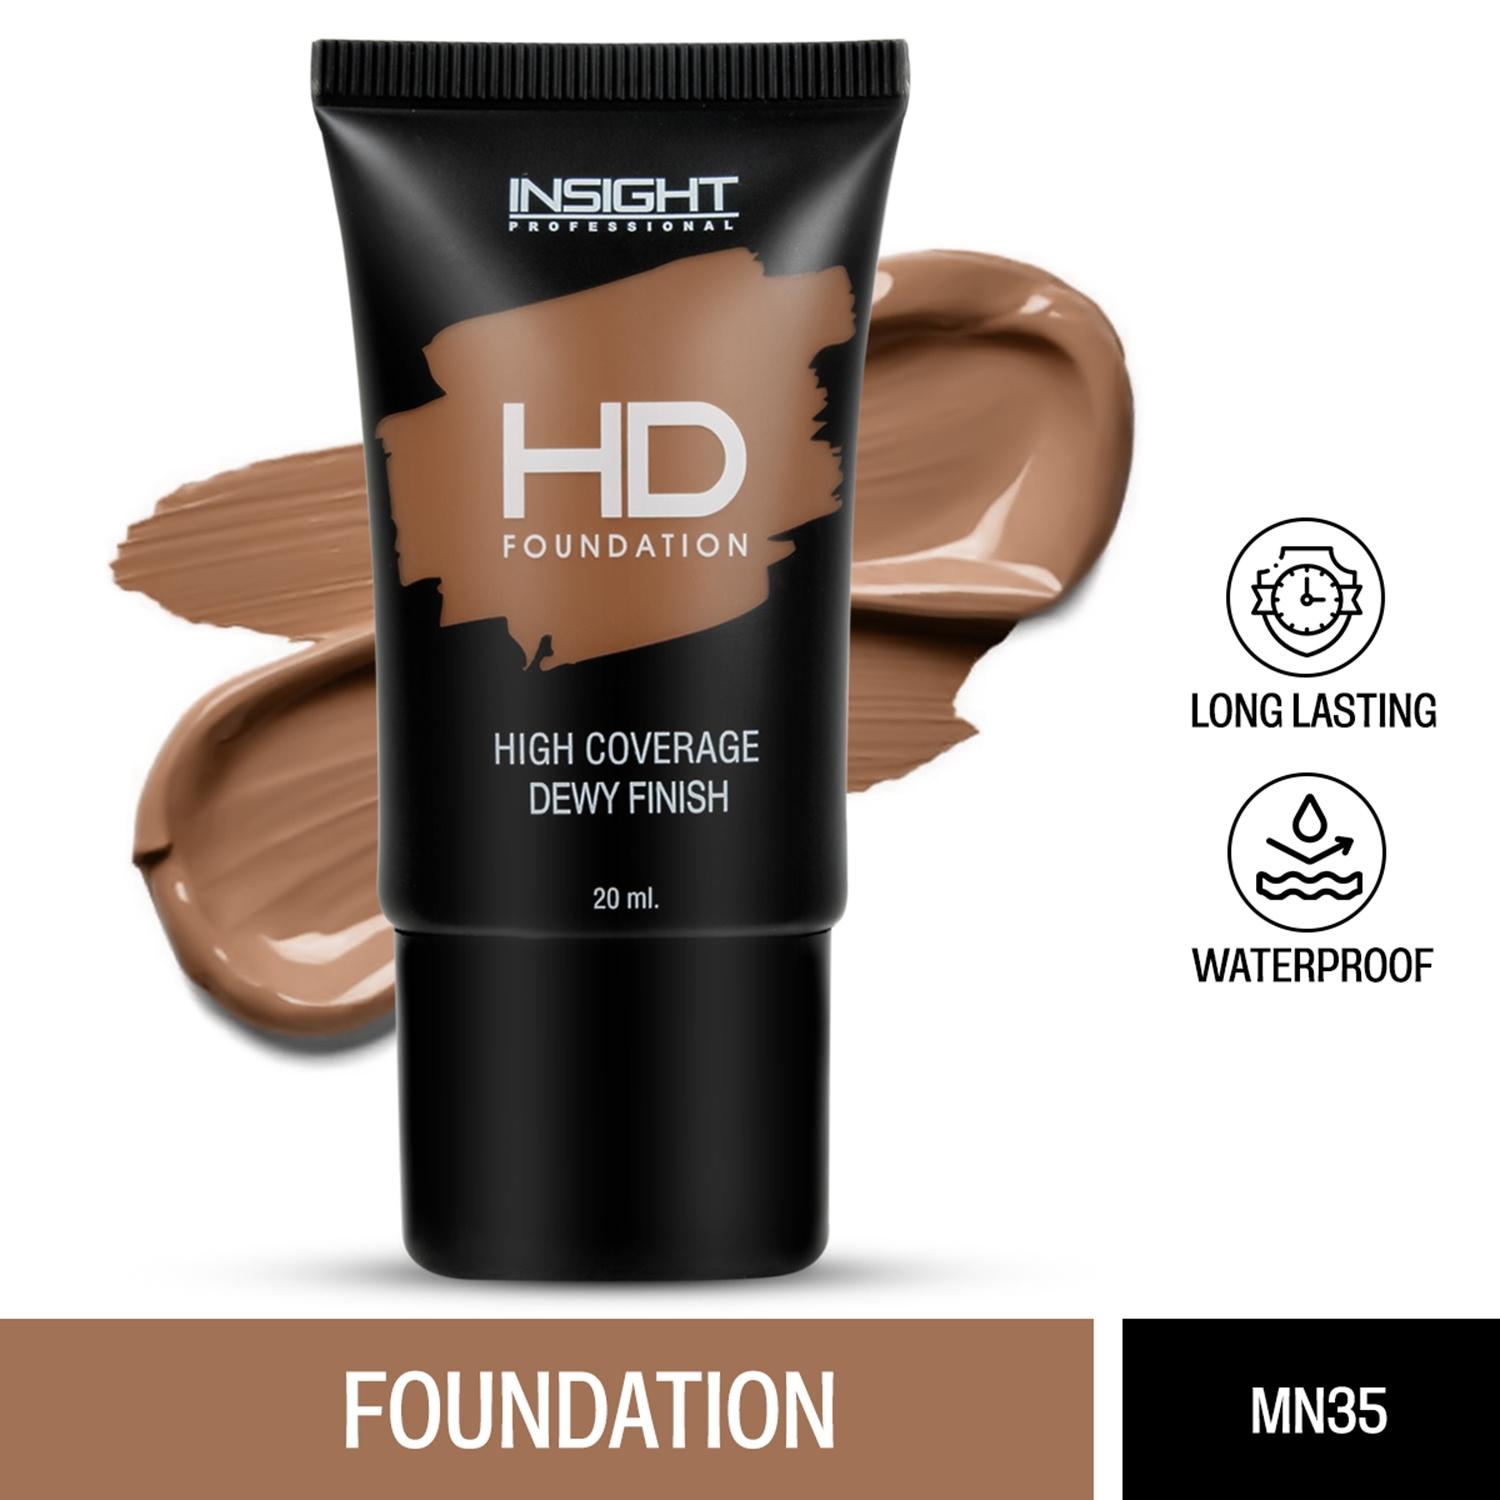 insight cosmetics dewy finish hd foundation - mn 35 (20ml)